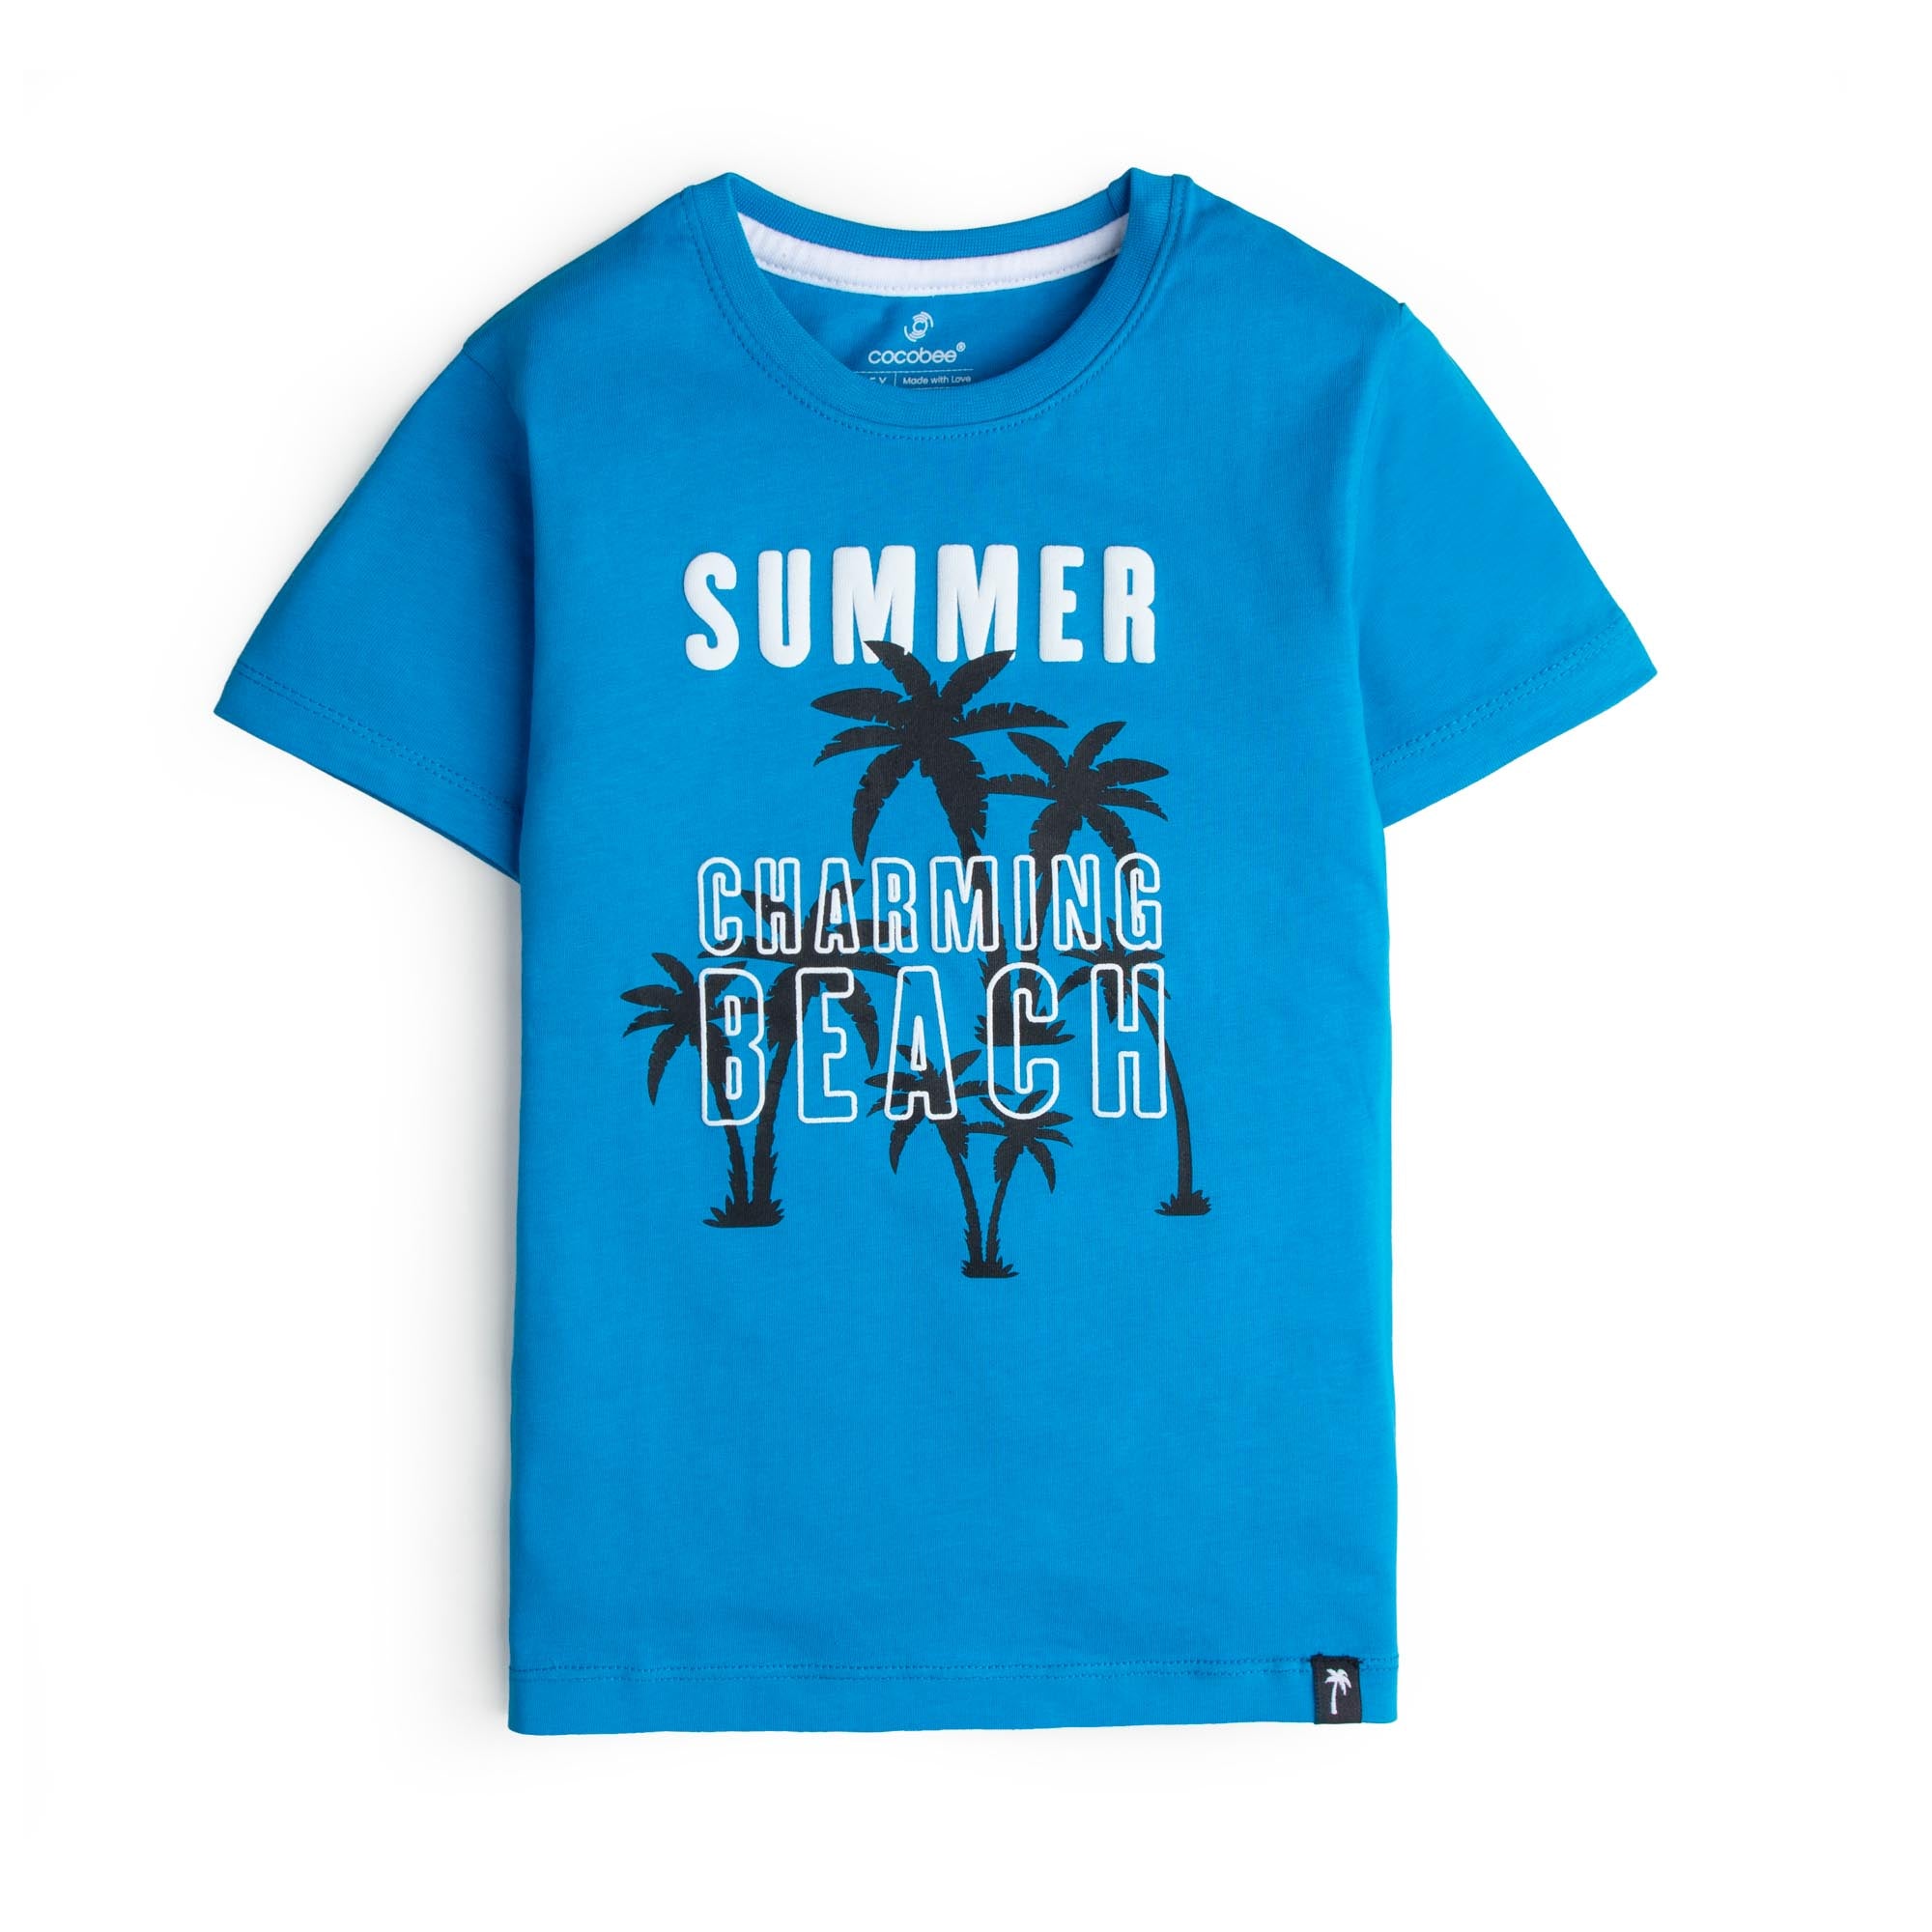 Summer Fling Graphic T-shirt